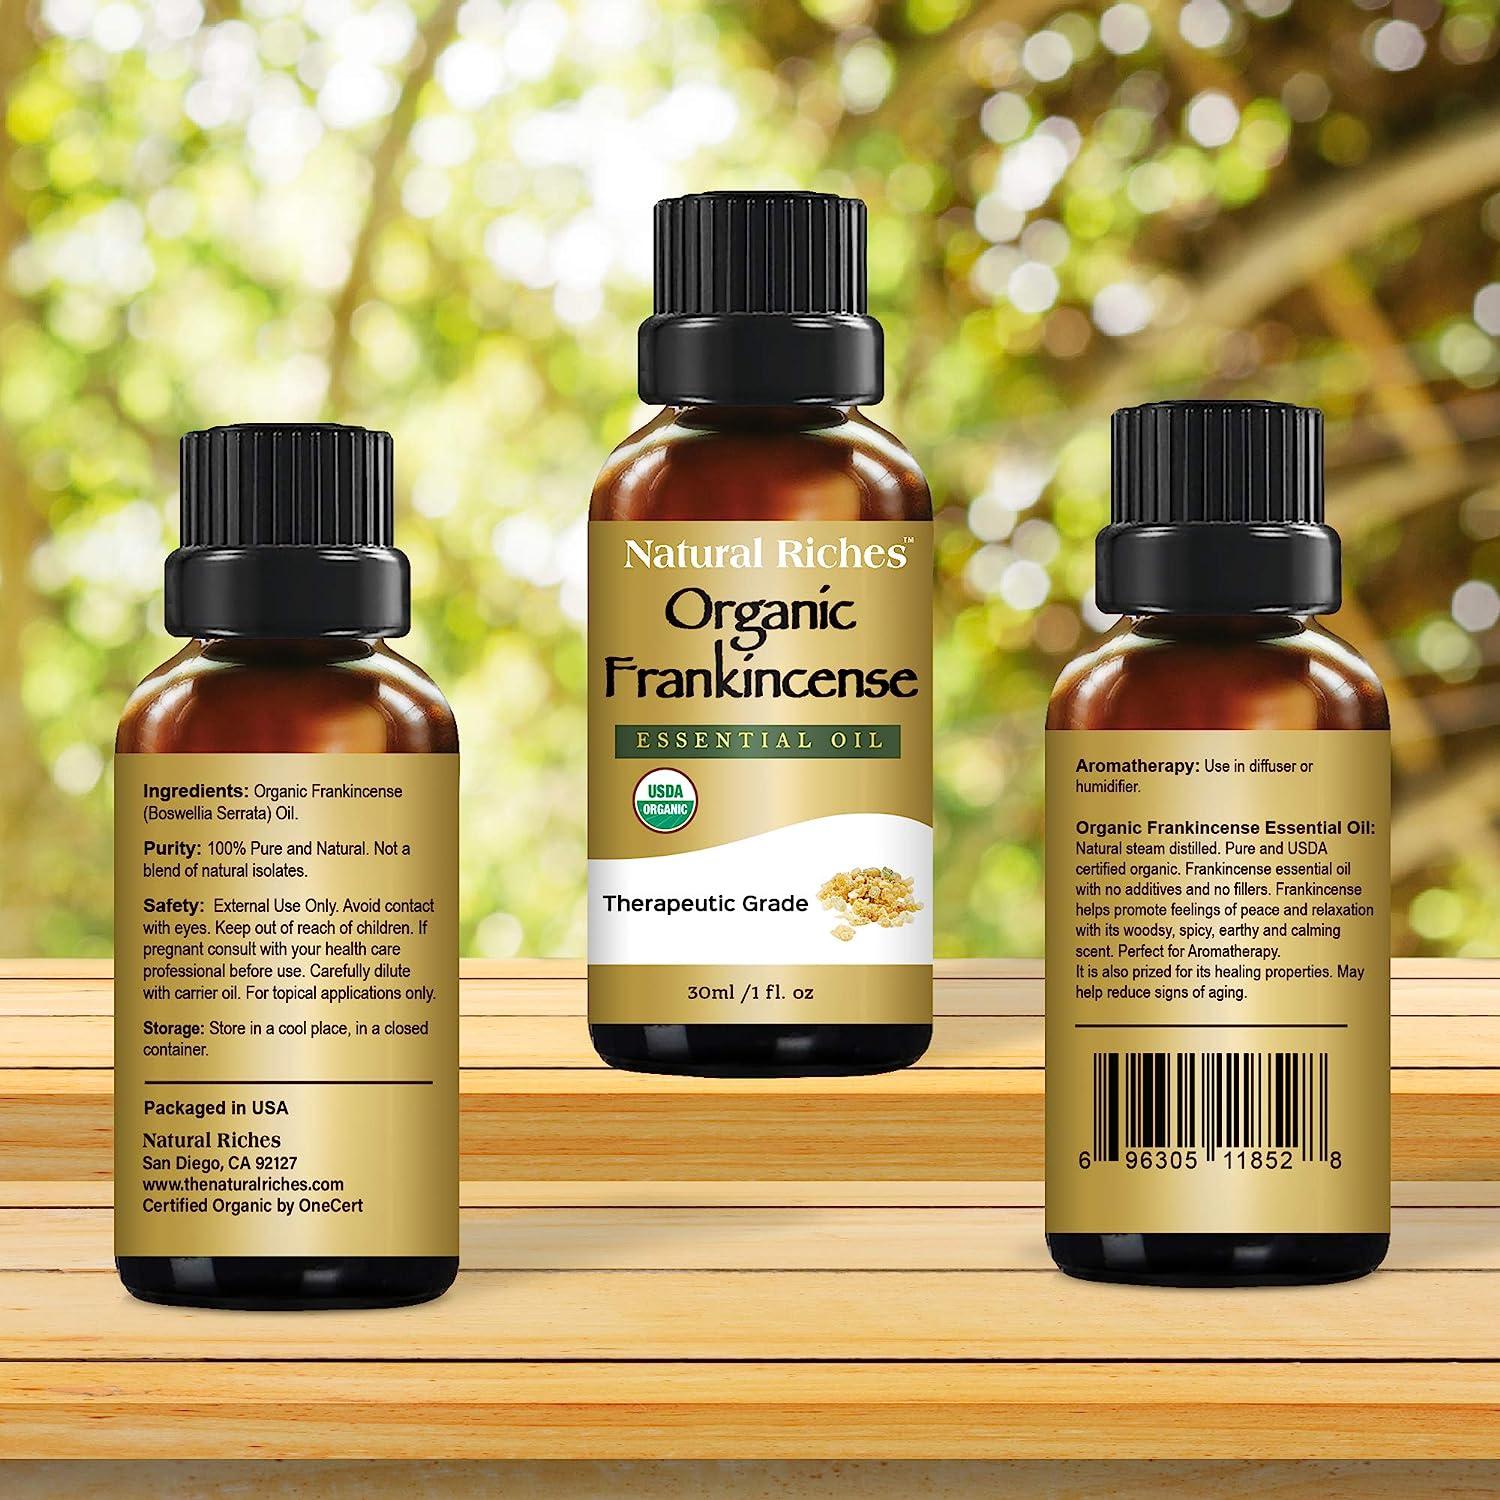 100% Frankincense Essential Oil (Pre-order)